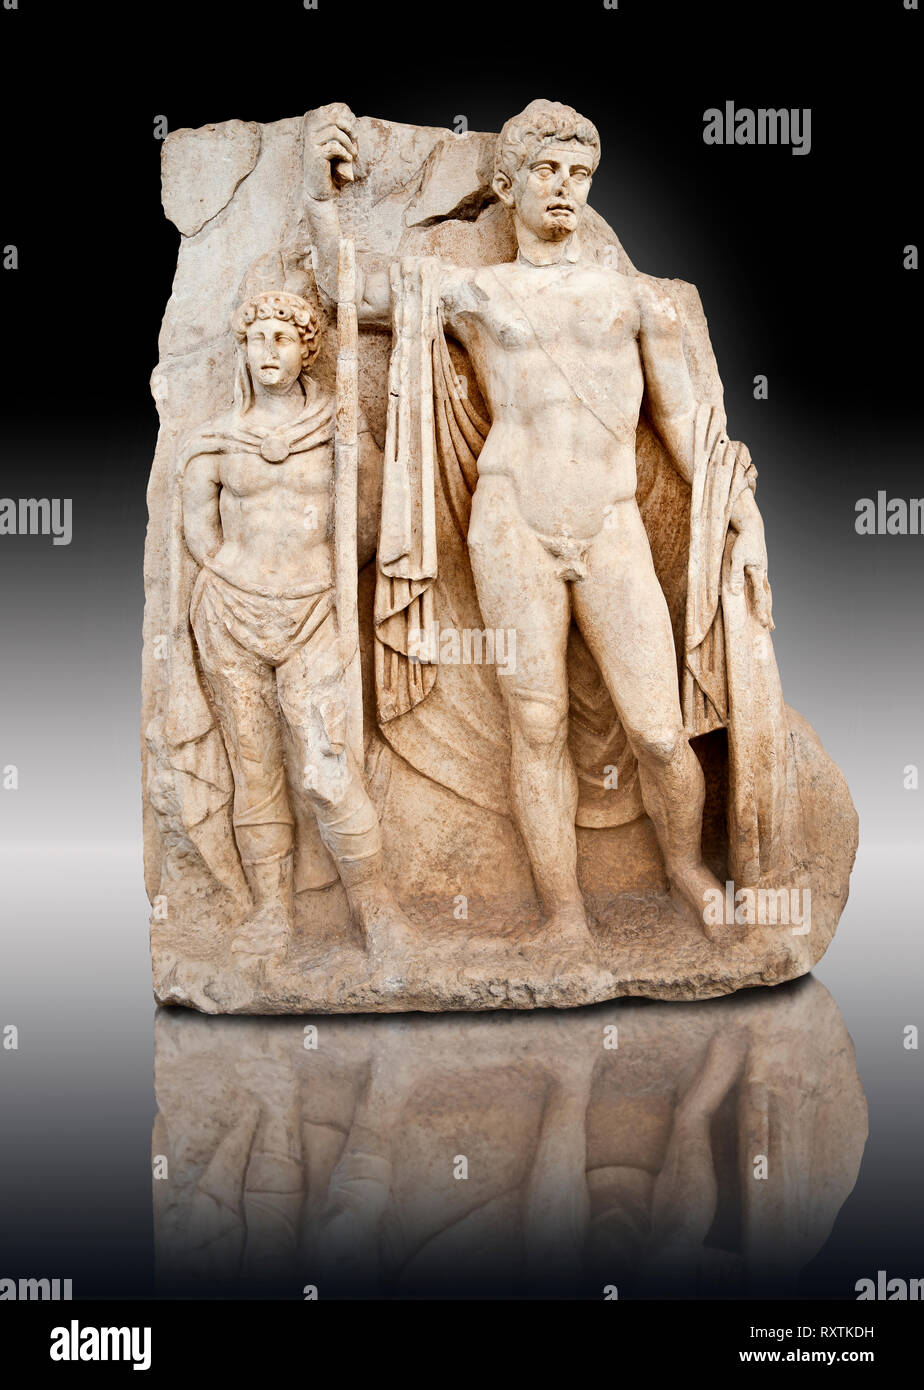 La sculpture de l'Empereur romain Tibère et le barbare captif. Musée Archéologique d'Aphrodisias, Turquie Banque D'Images